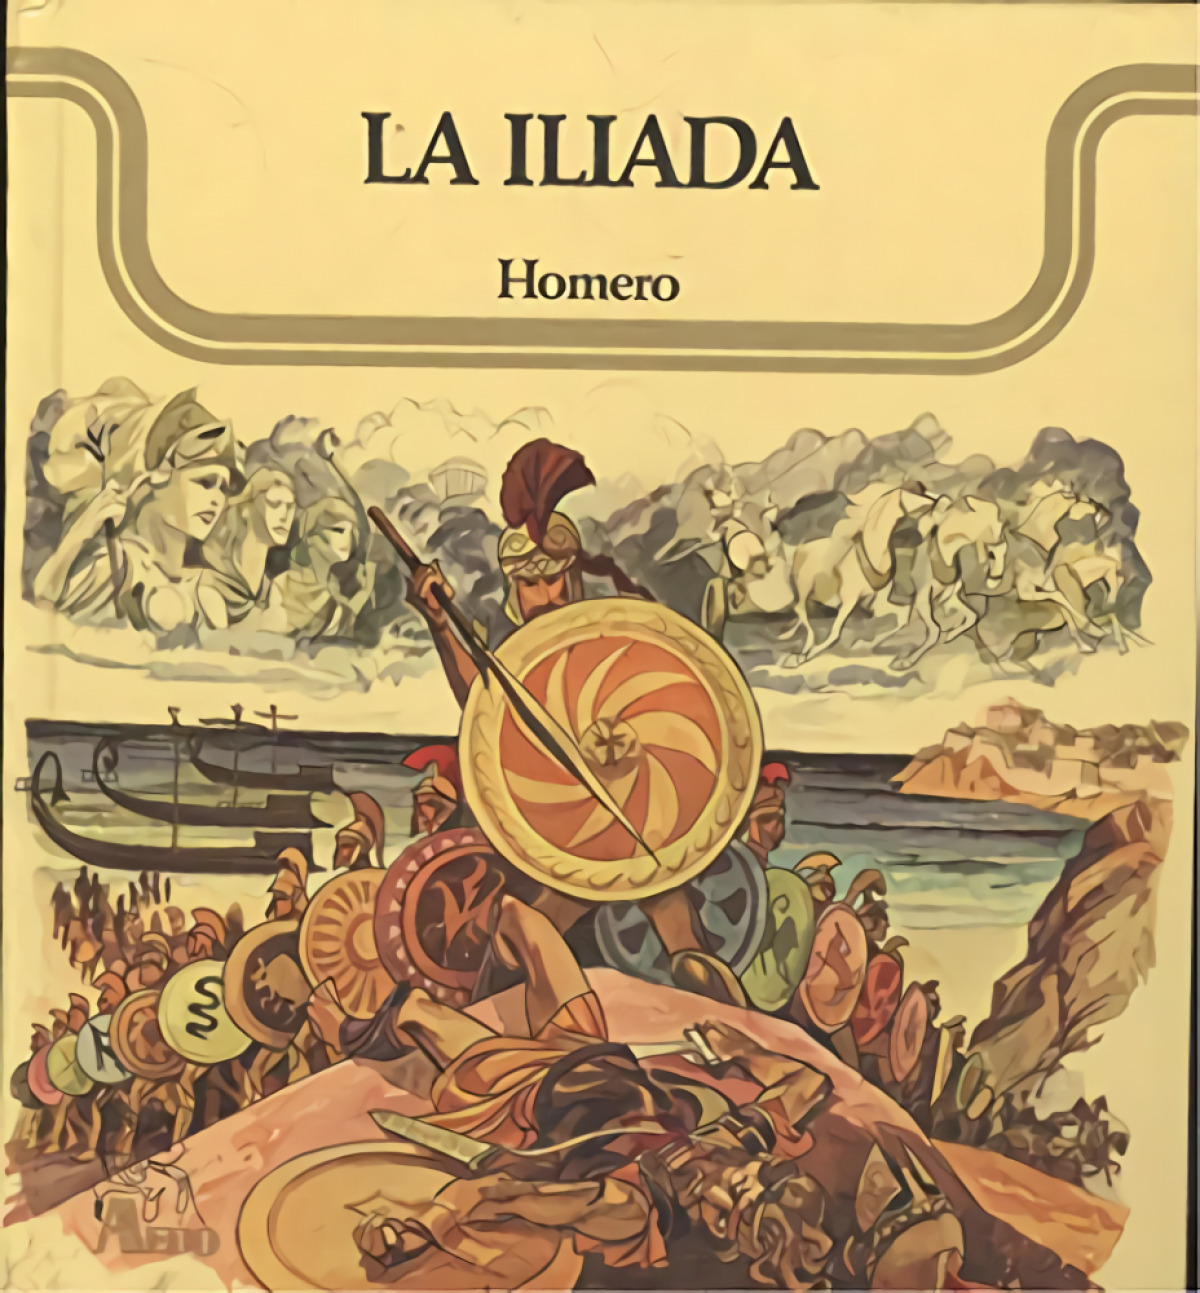 La Ilíada - Editorial Juventud